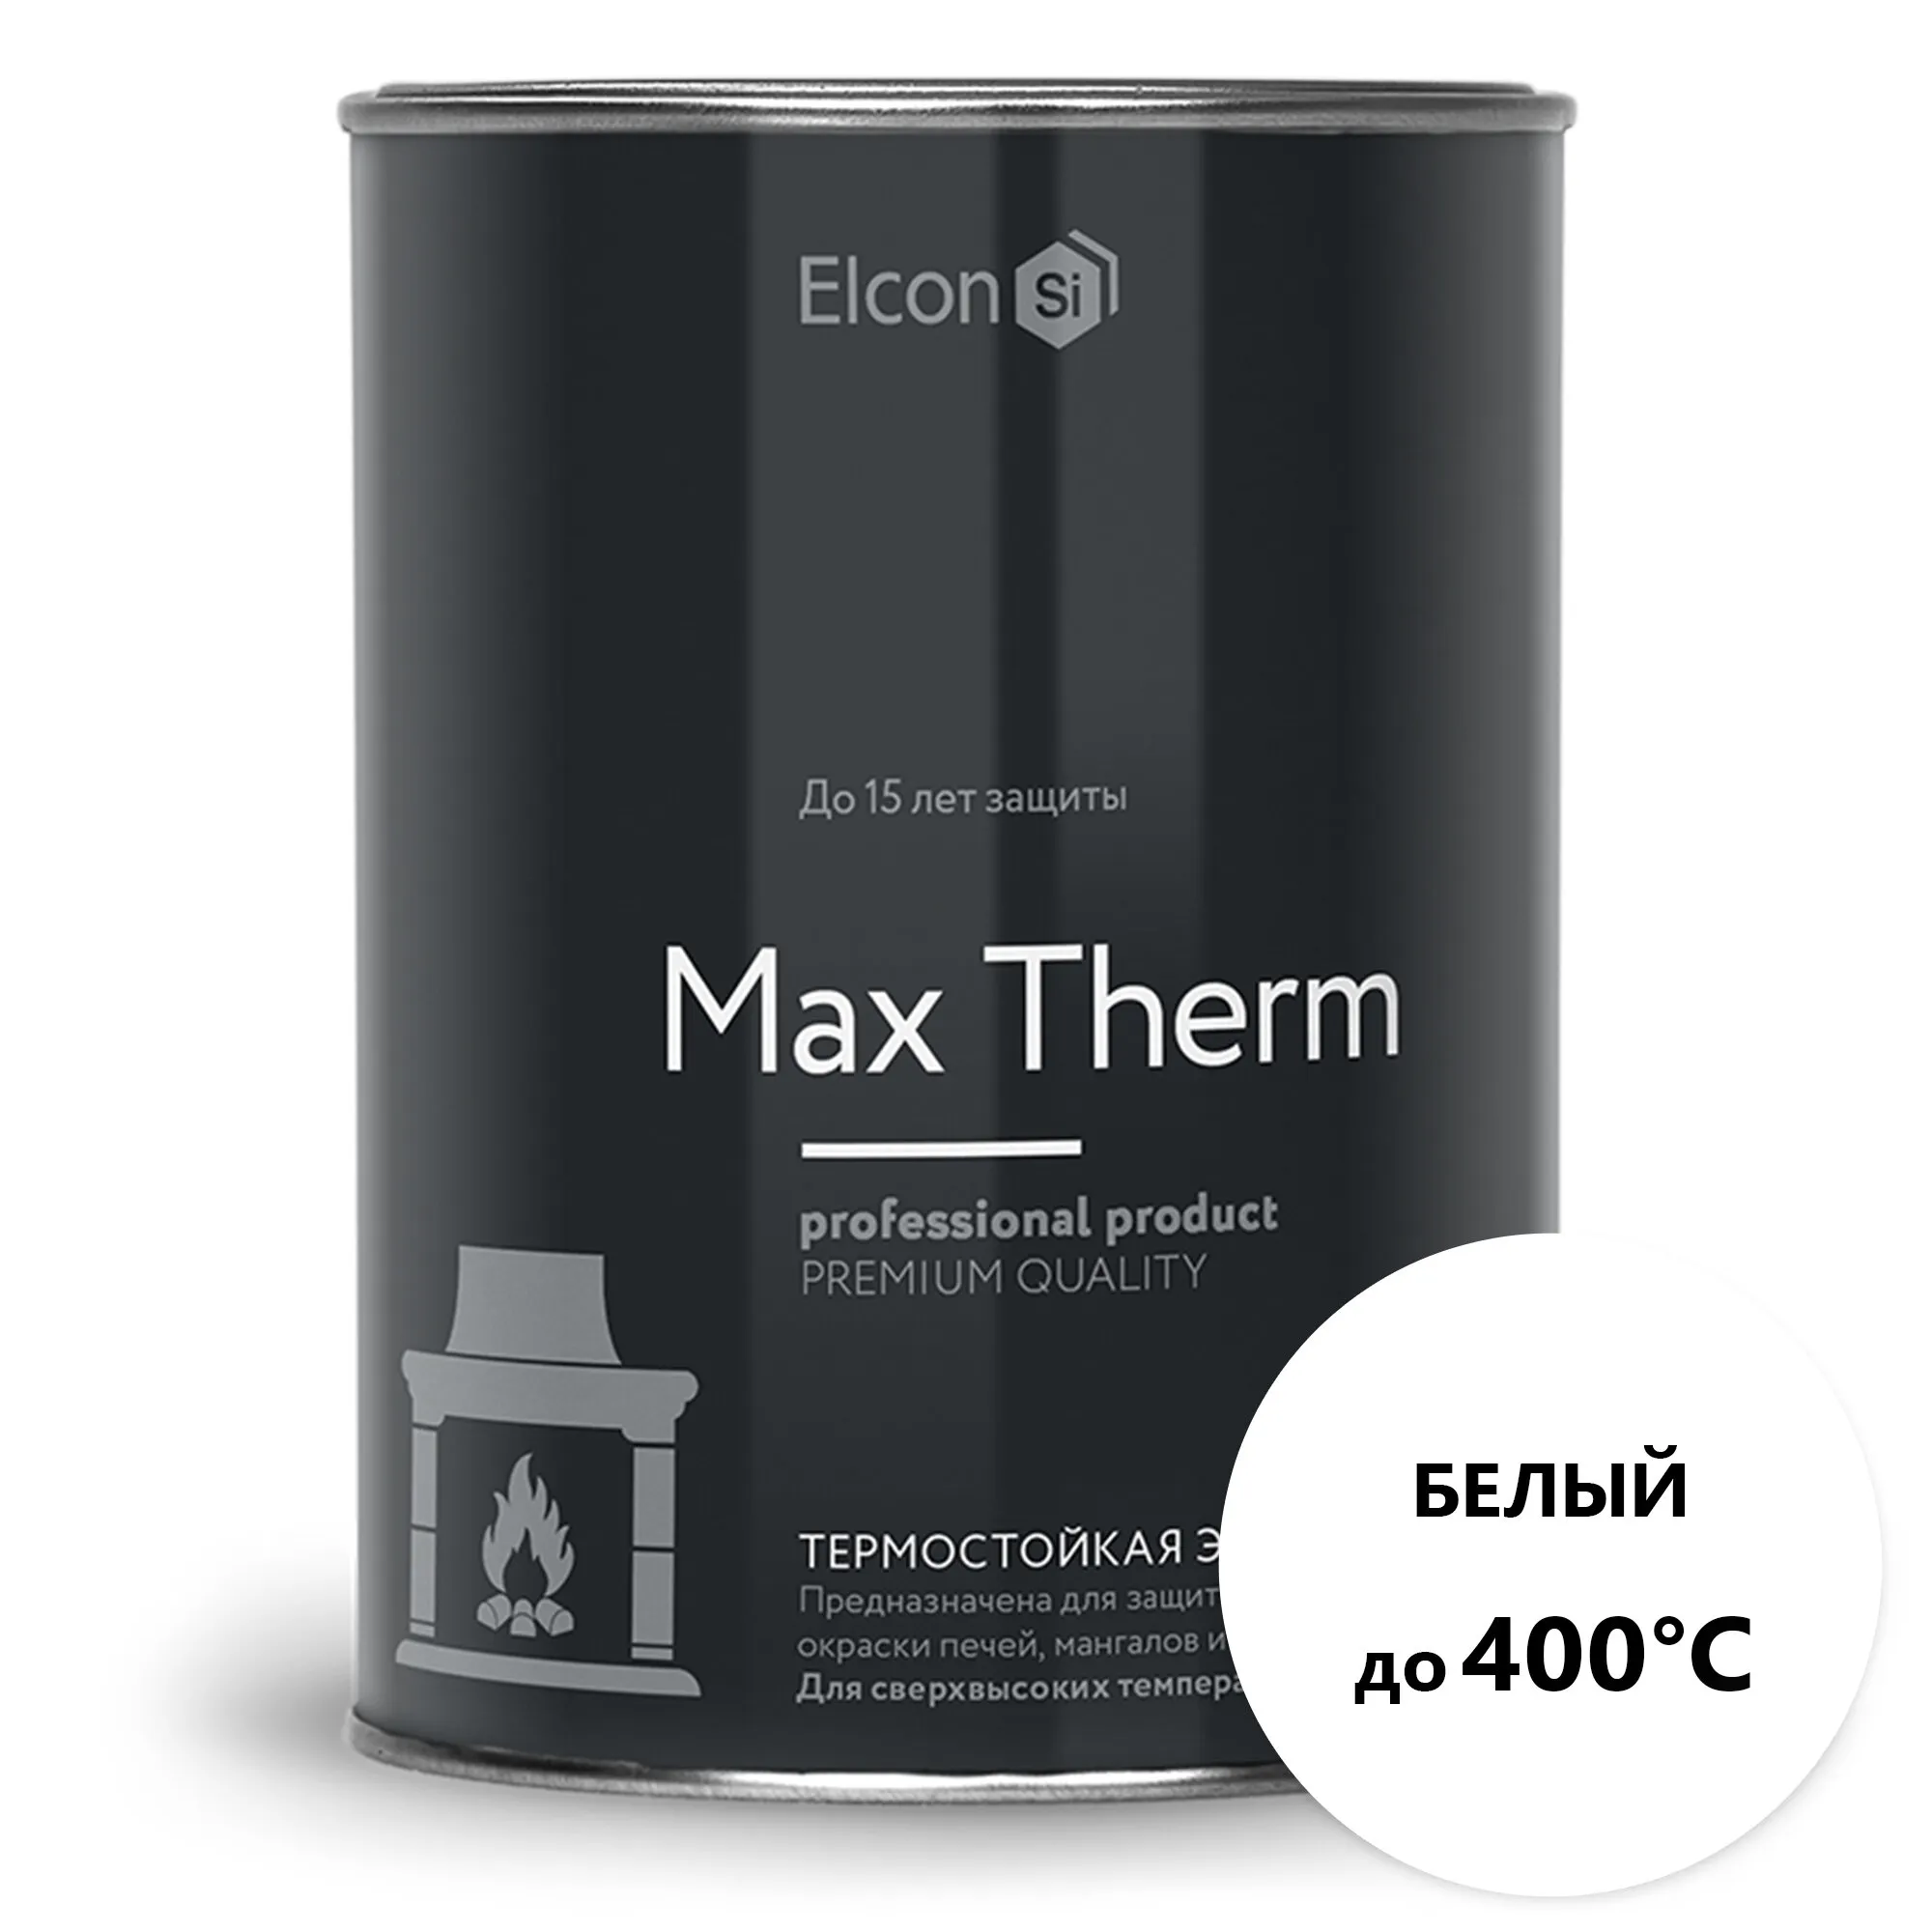 Термостойкая антикоррозийная эмаль Max Therm белый 0,8кг; 400°С#1